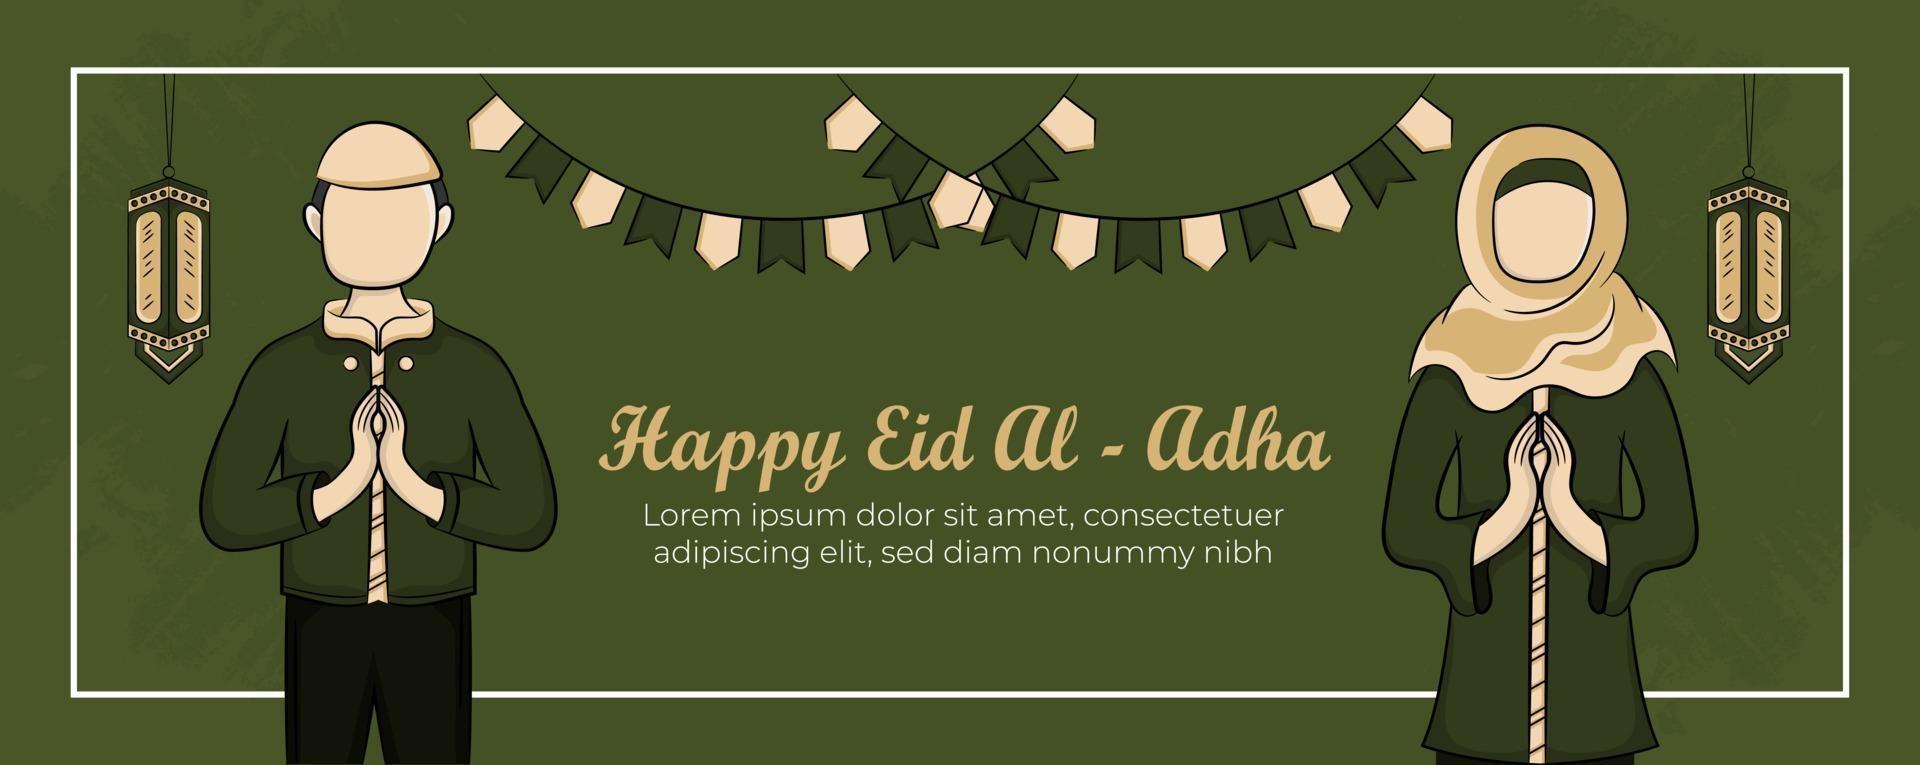 eid al-adha banner mall med handritade muslimer, moské, lykta och islamisk prydnad i grön bakgrund. vektor